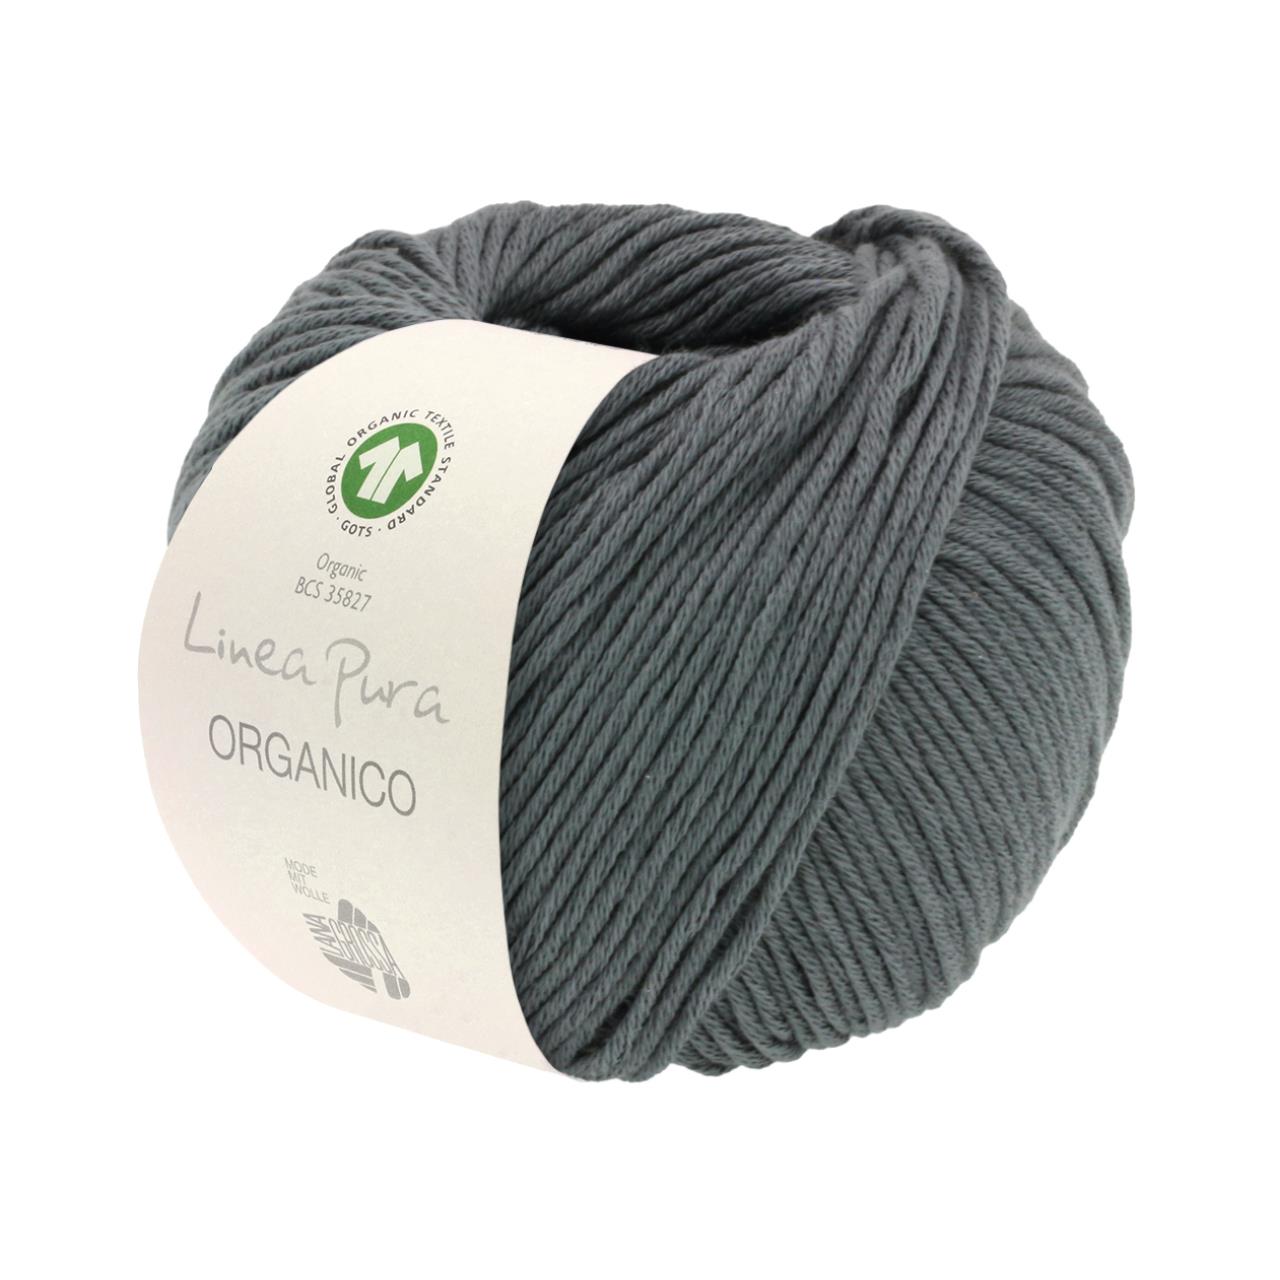 Organico (Linea Pura) 156 Dunkelgrau